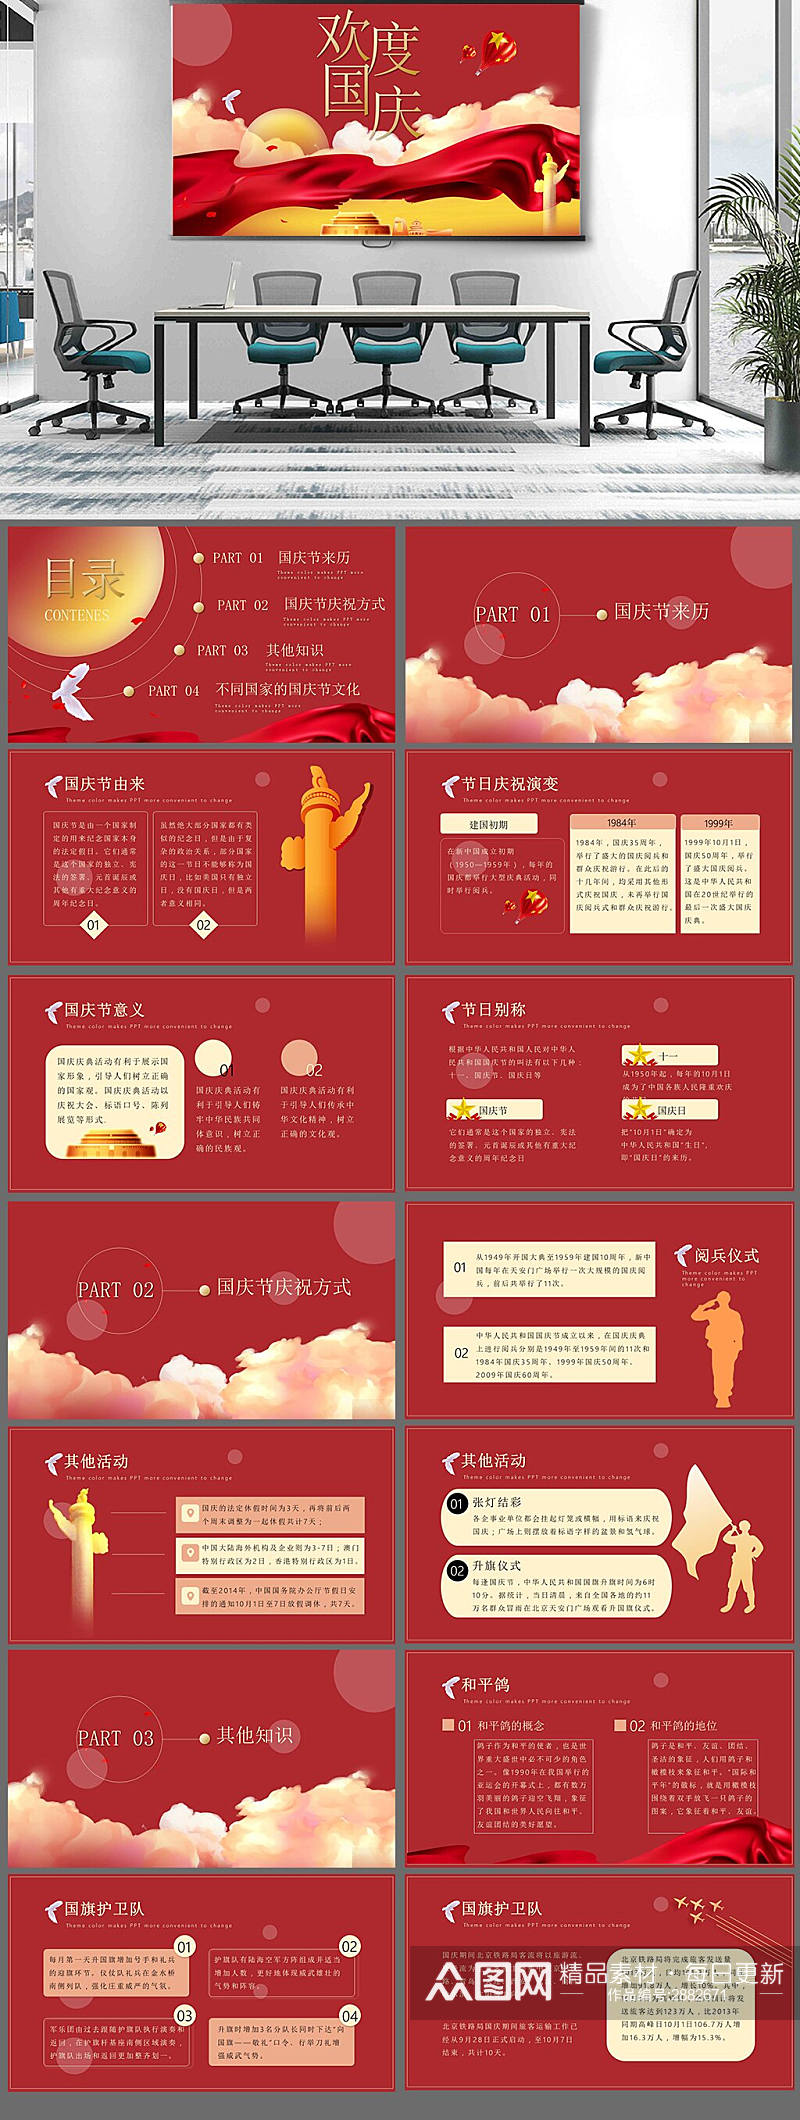 中国风国庆节节日庆典红色大气PPT模板素材